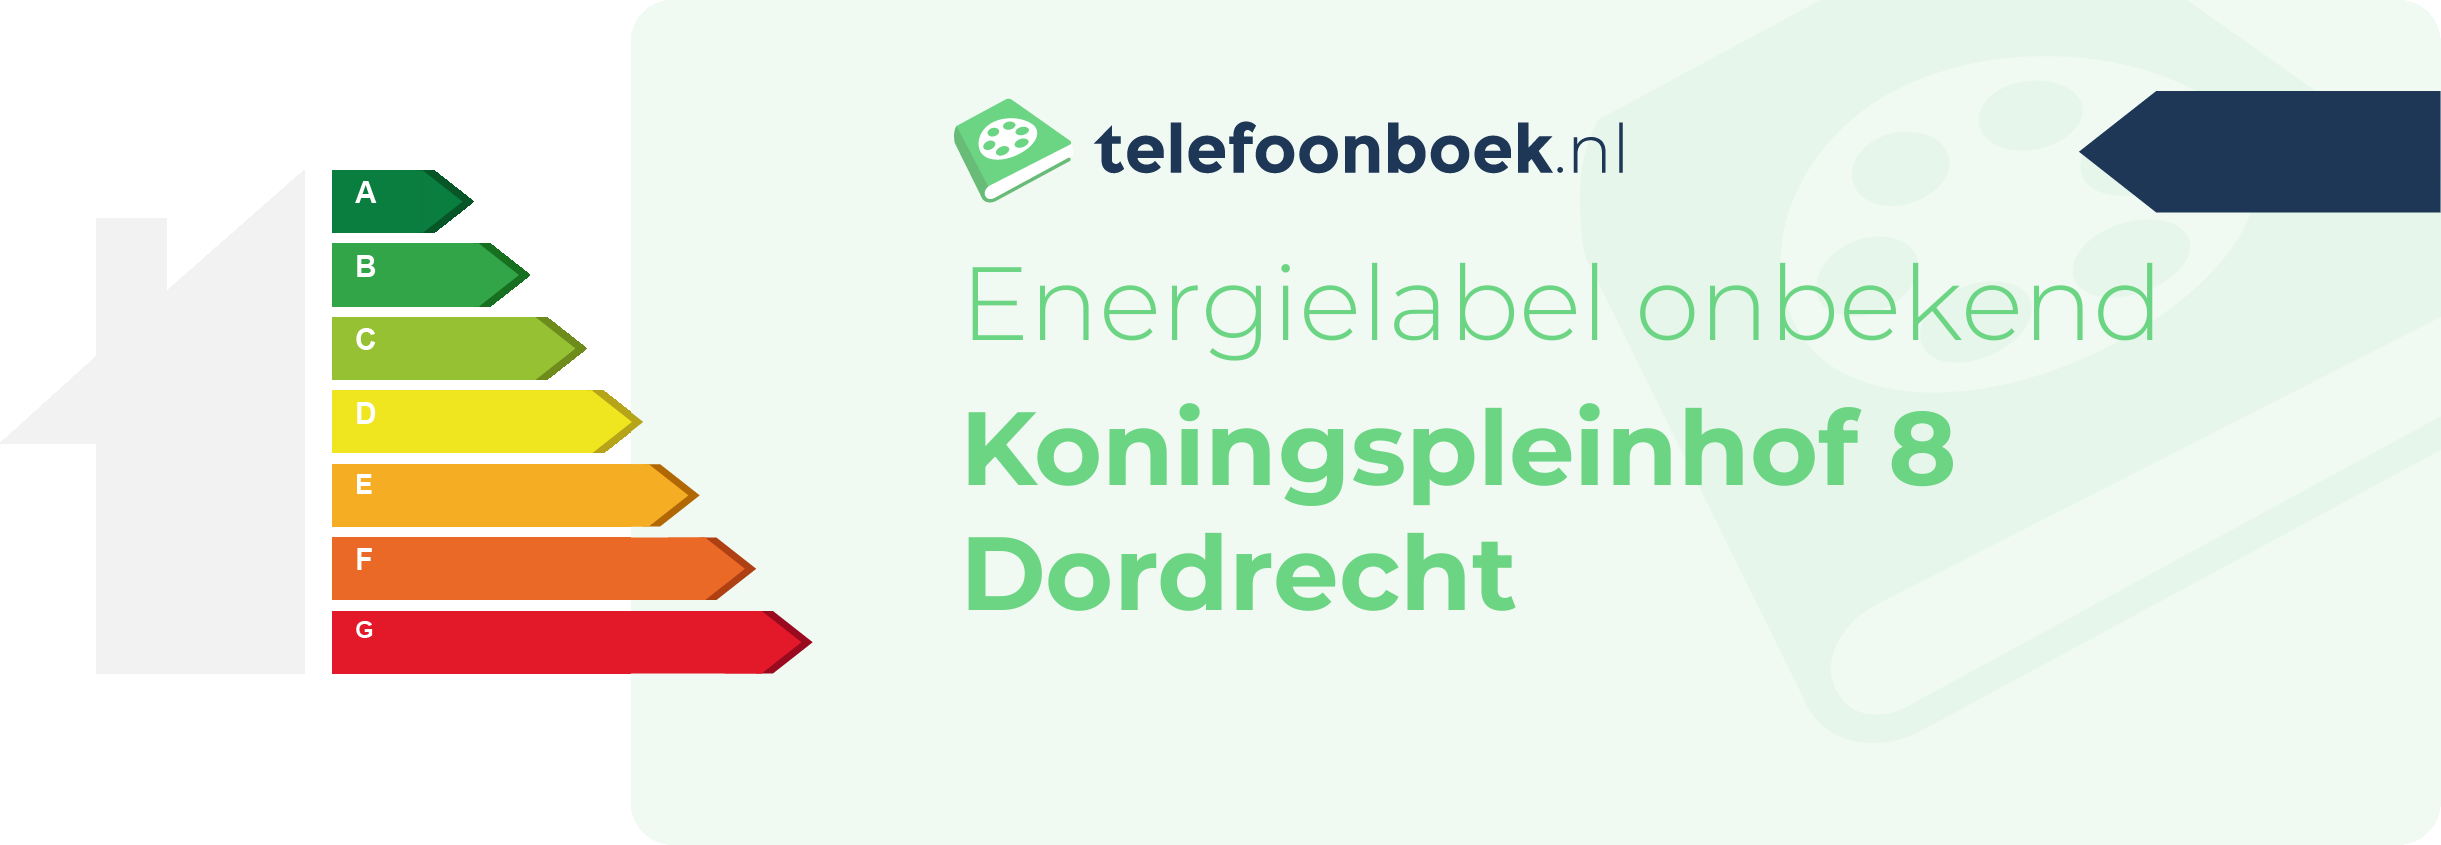 Energielabel Koningspleinhof 8 Dordrecht